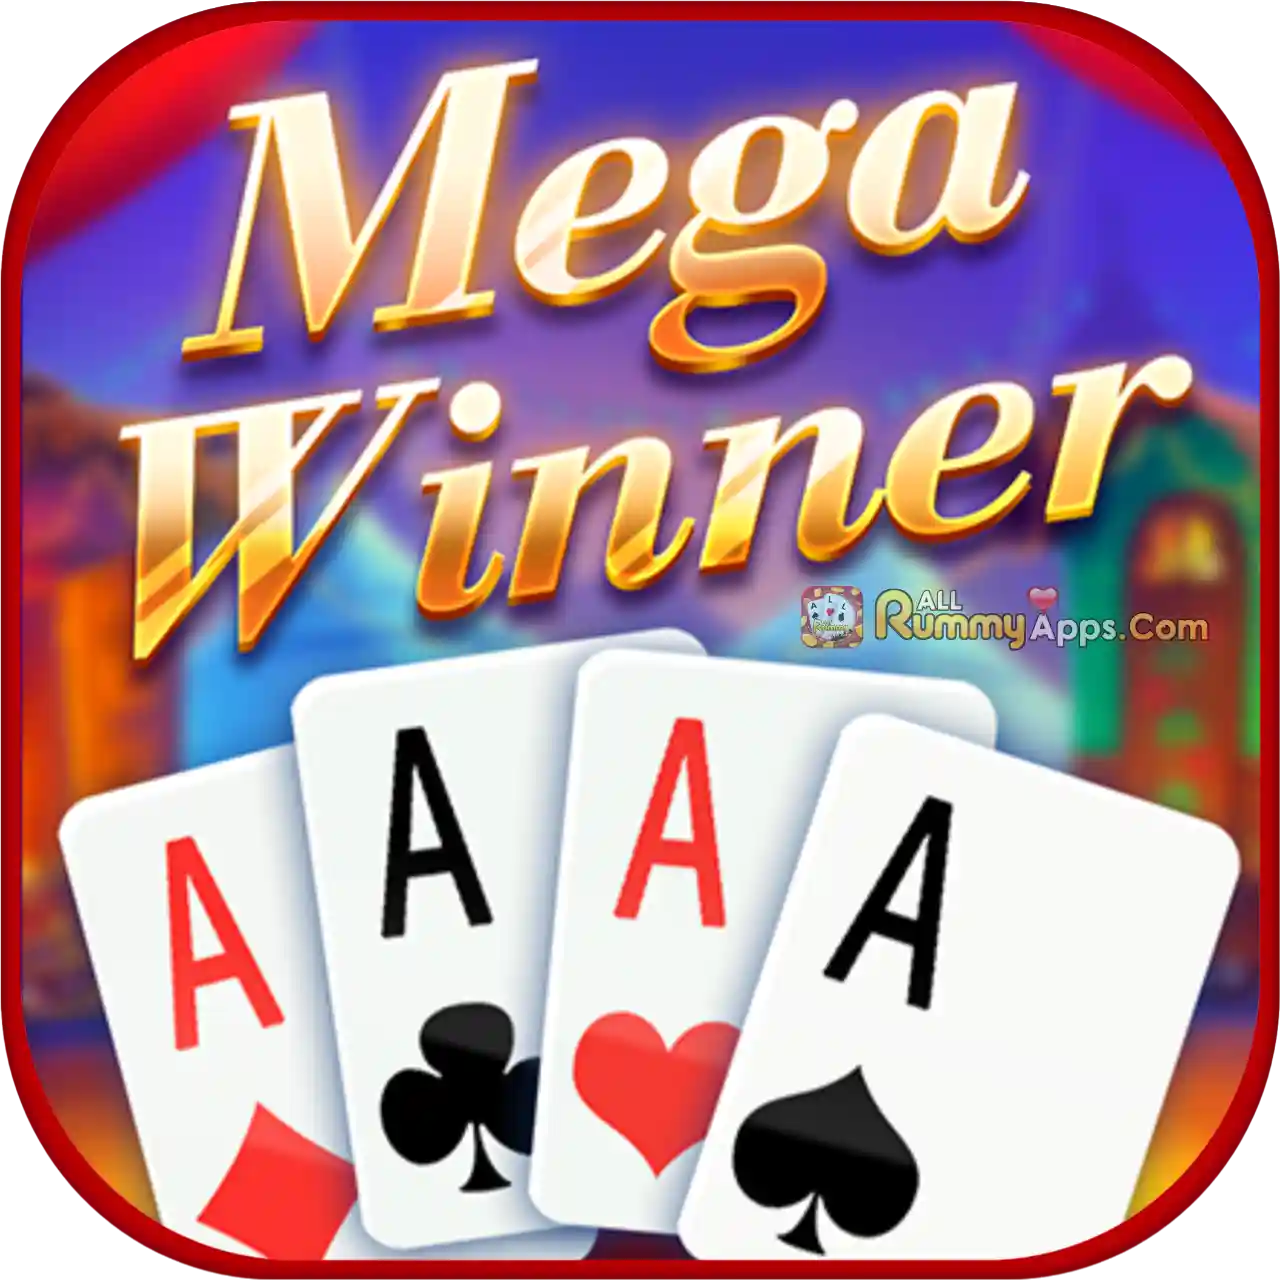 Mega Winner - All Rummy Apps List ₹51 Bonus